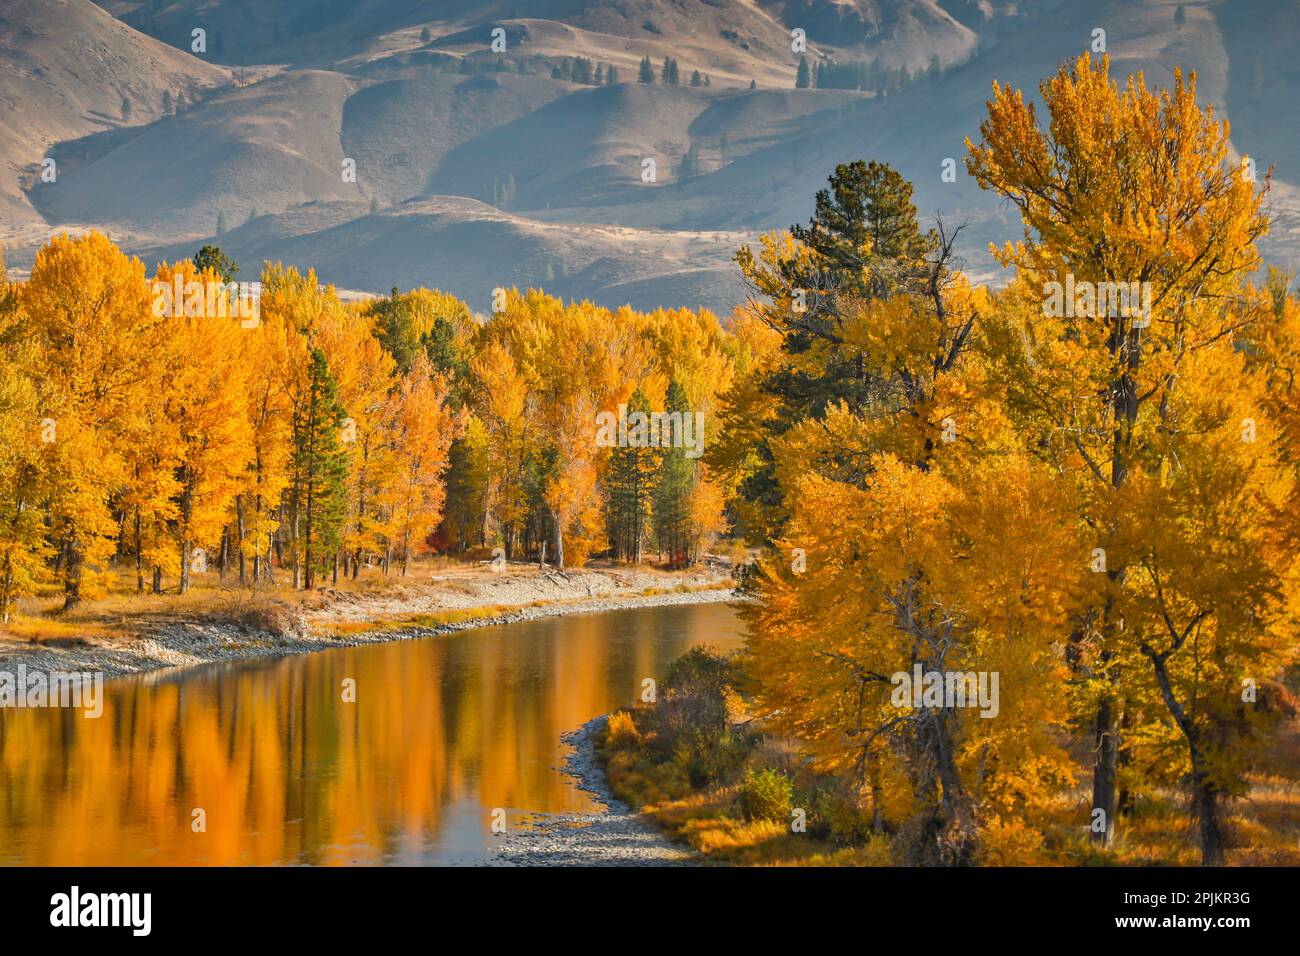 États-Unis, État de Washington, Metow Valley et rivière bordés d'arbres de couleur automnale. Banque D'Images